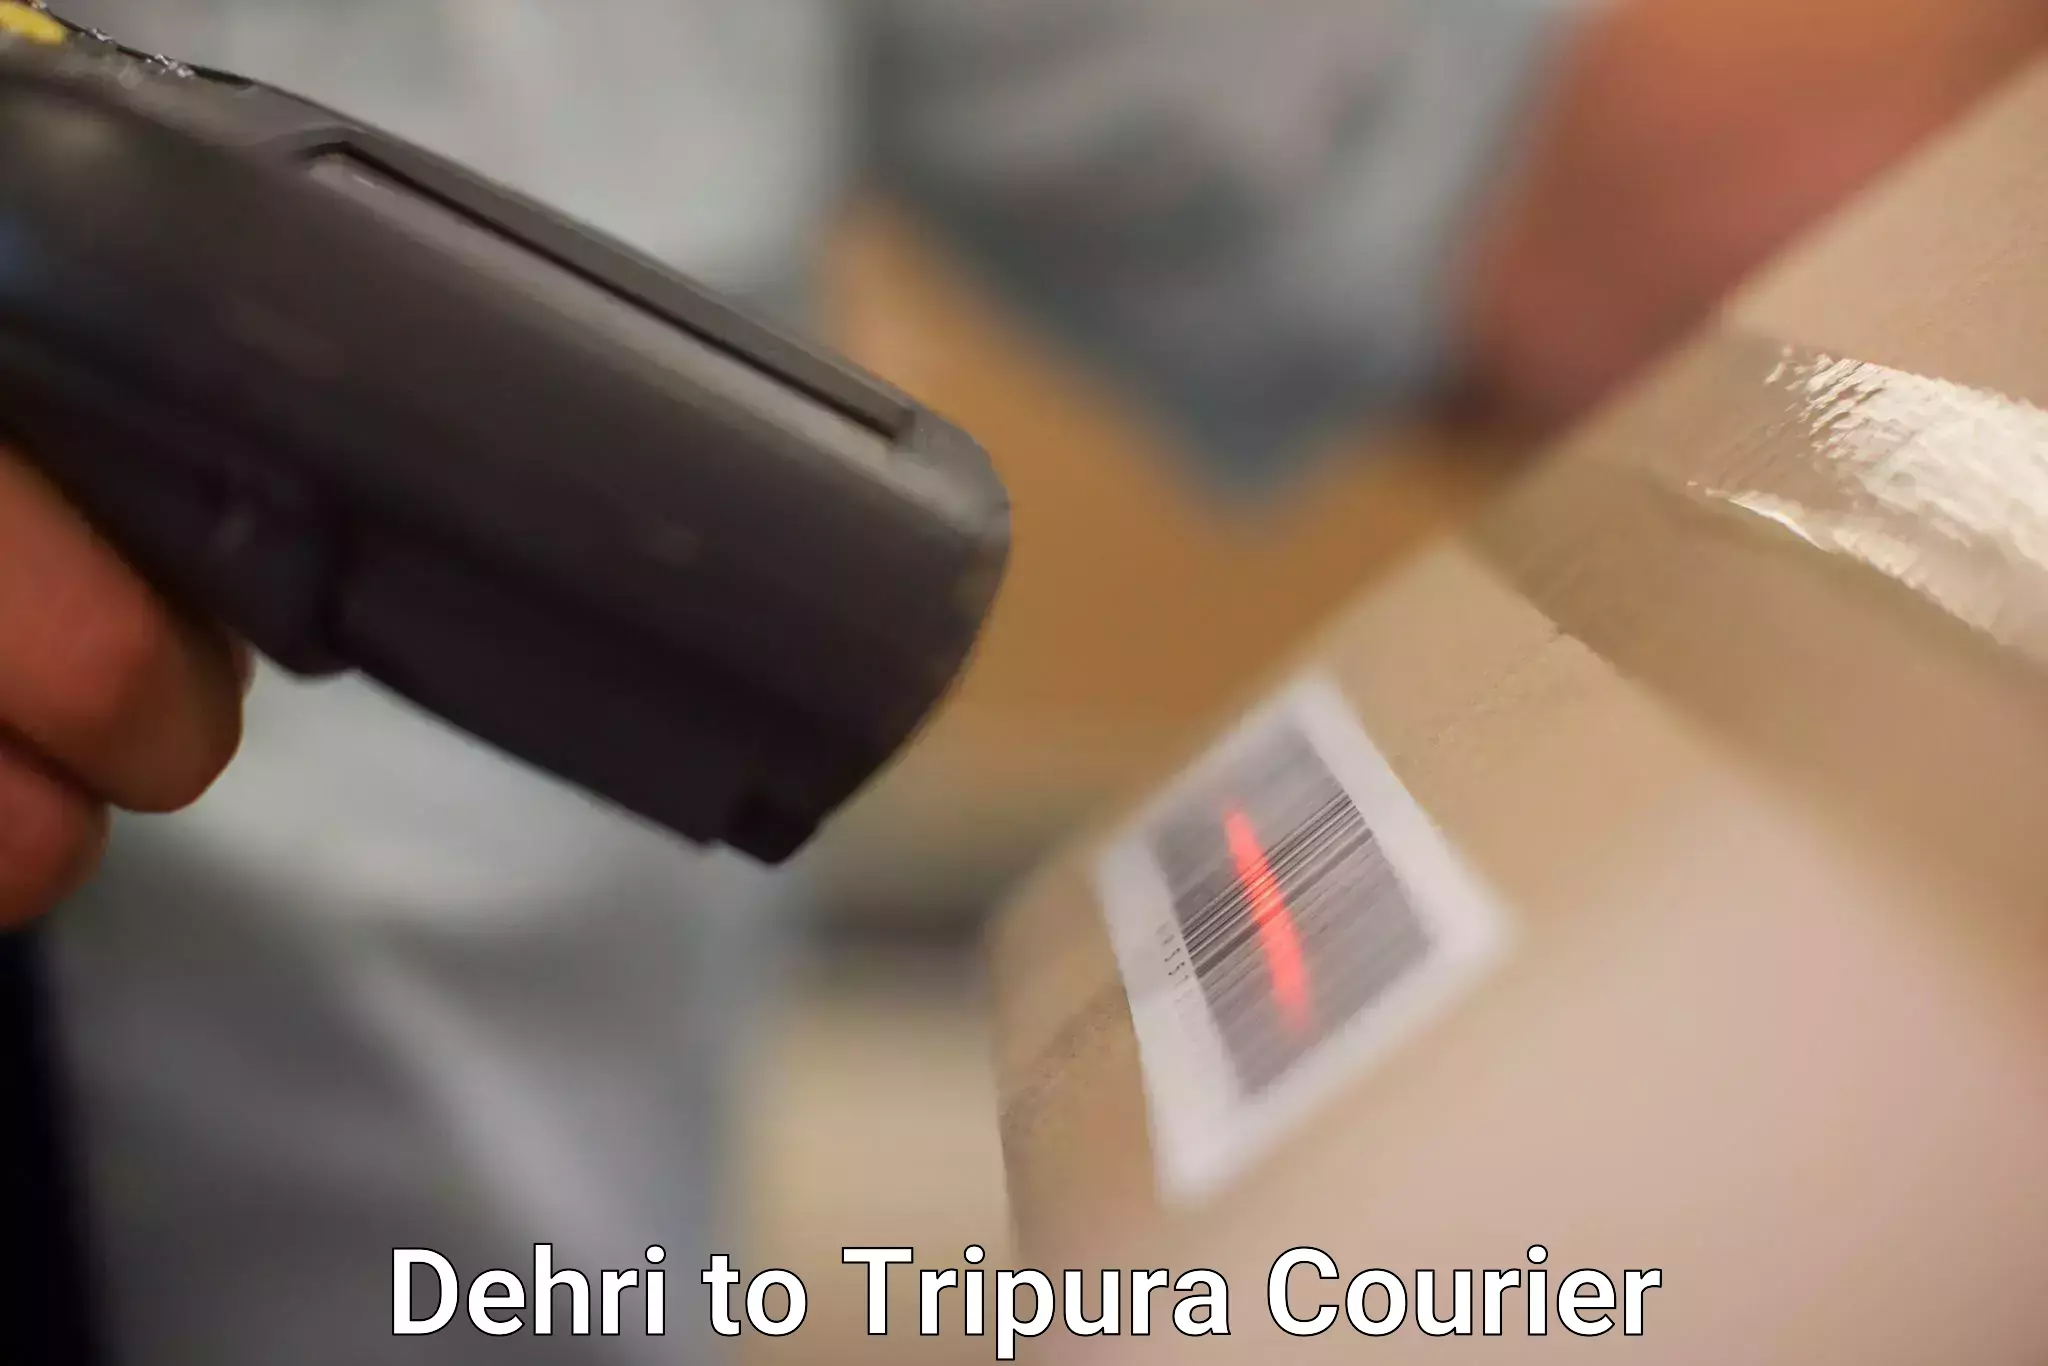 Courier service comparison Dehri to Tripura